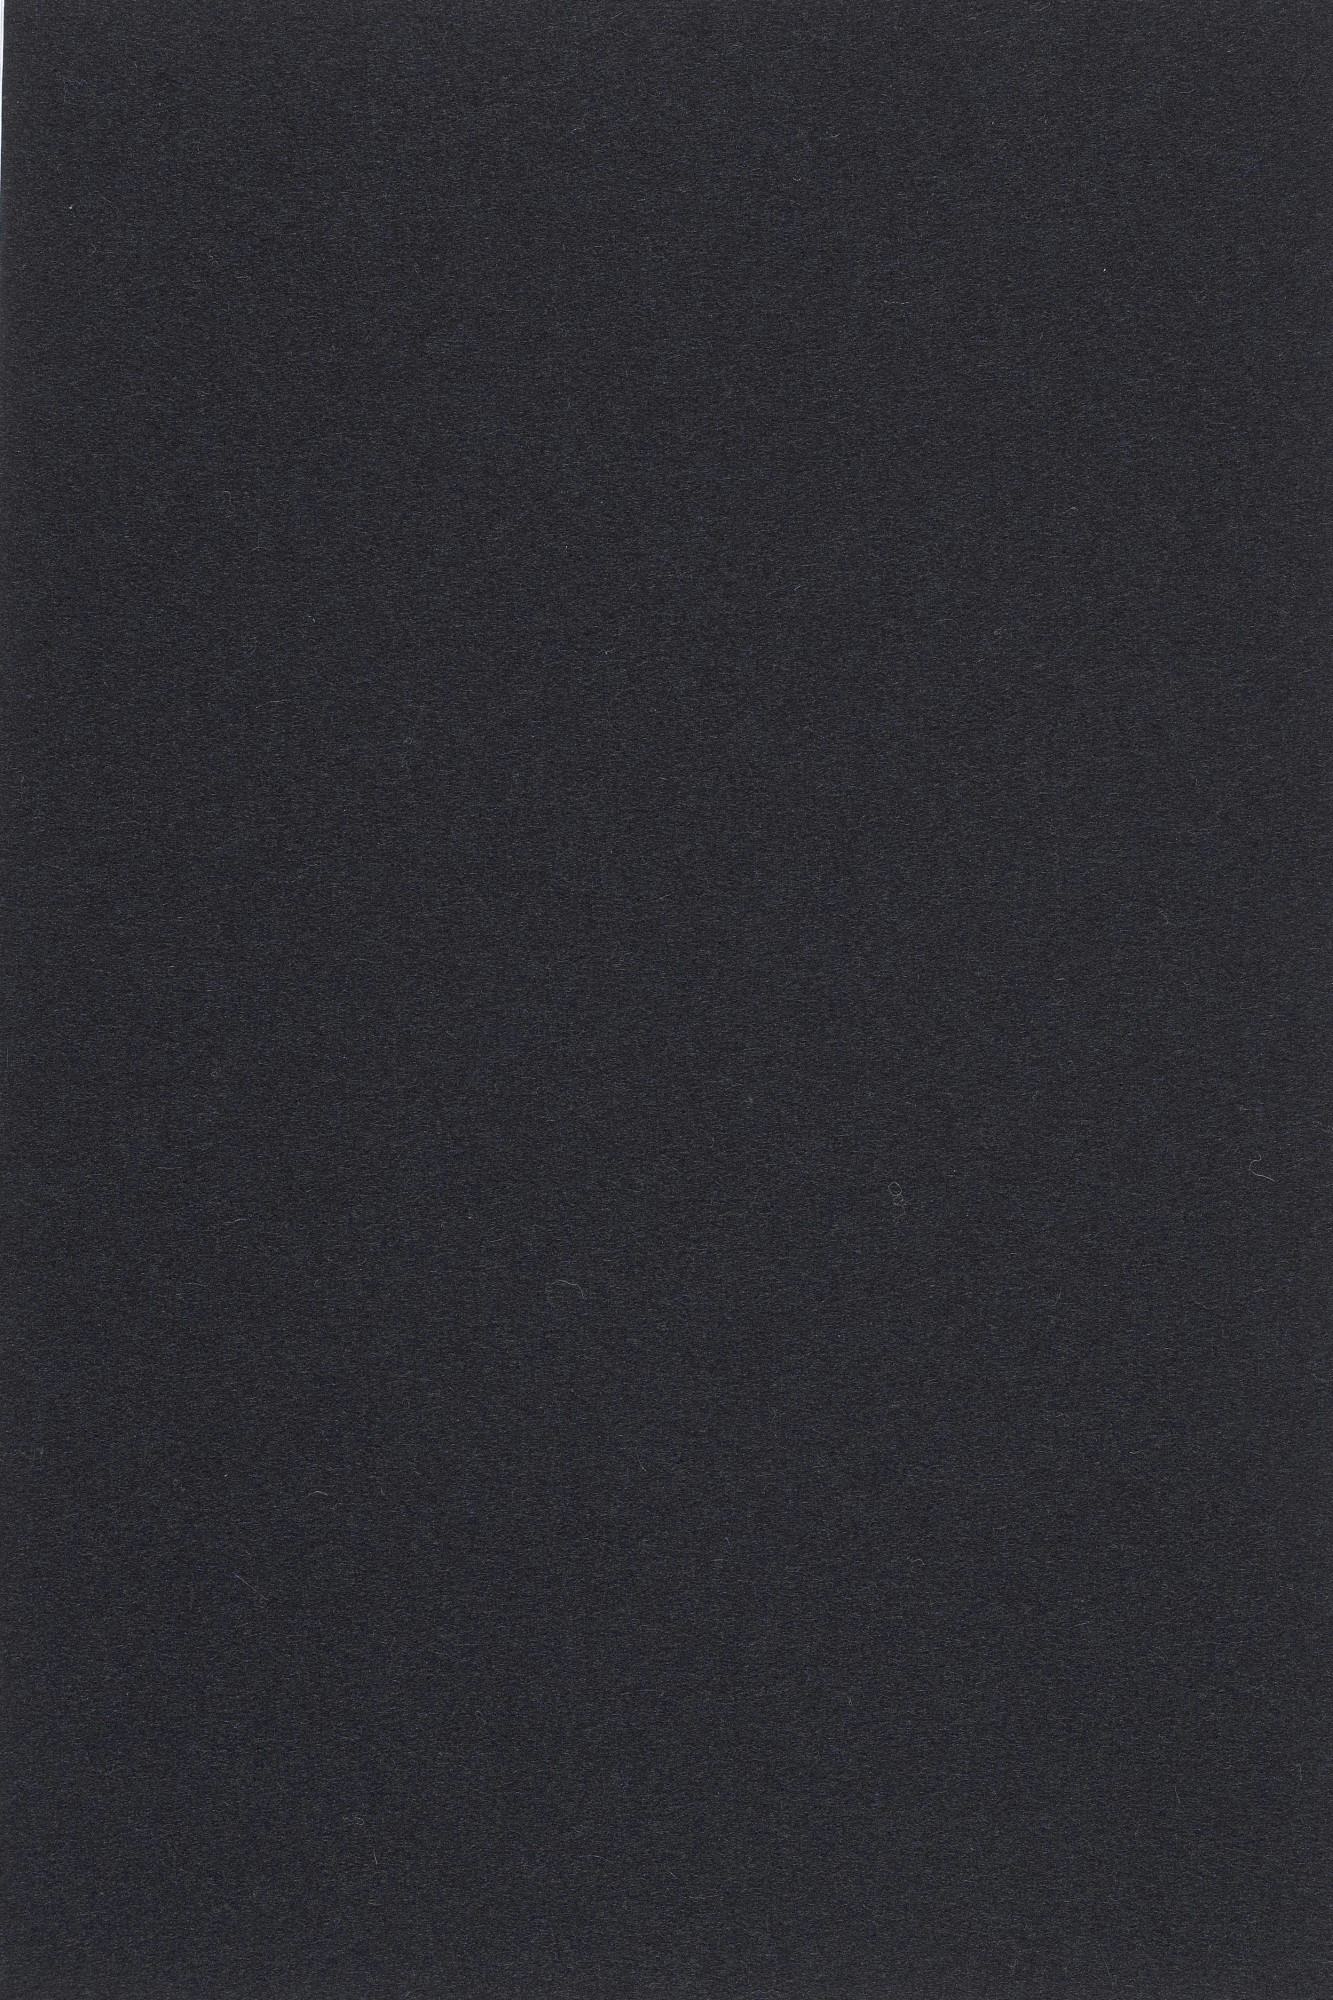 Fabric sample Divina 3 191 black